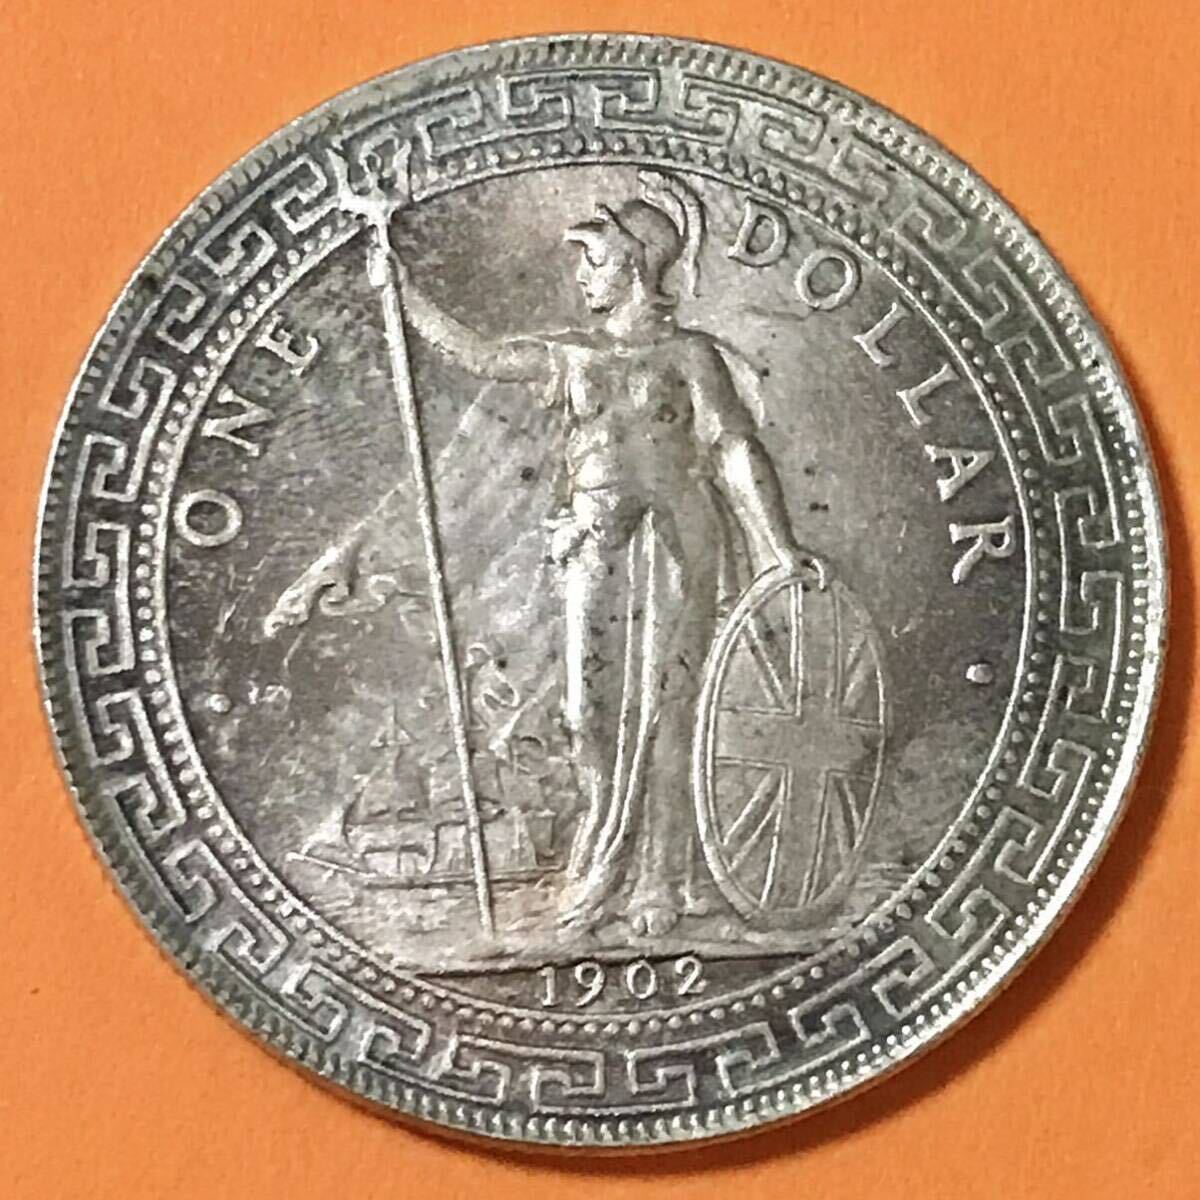 銀貨 1902年 一圓 ブリタニア立像 イギリス 1円銀貨 貿易銀 古銭 硬貨 コイン の画像1